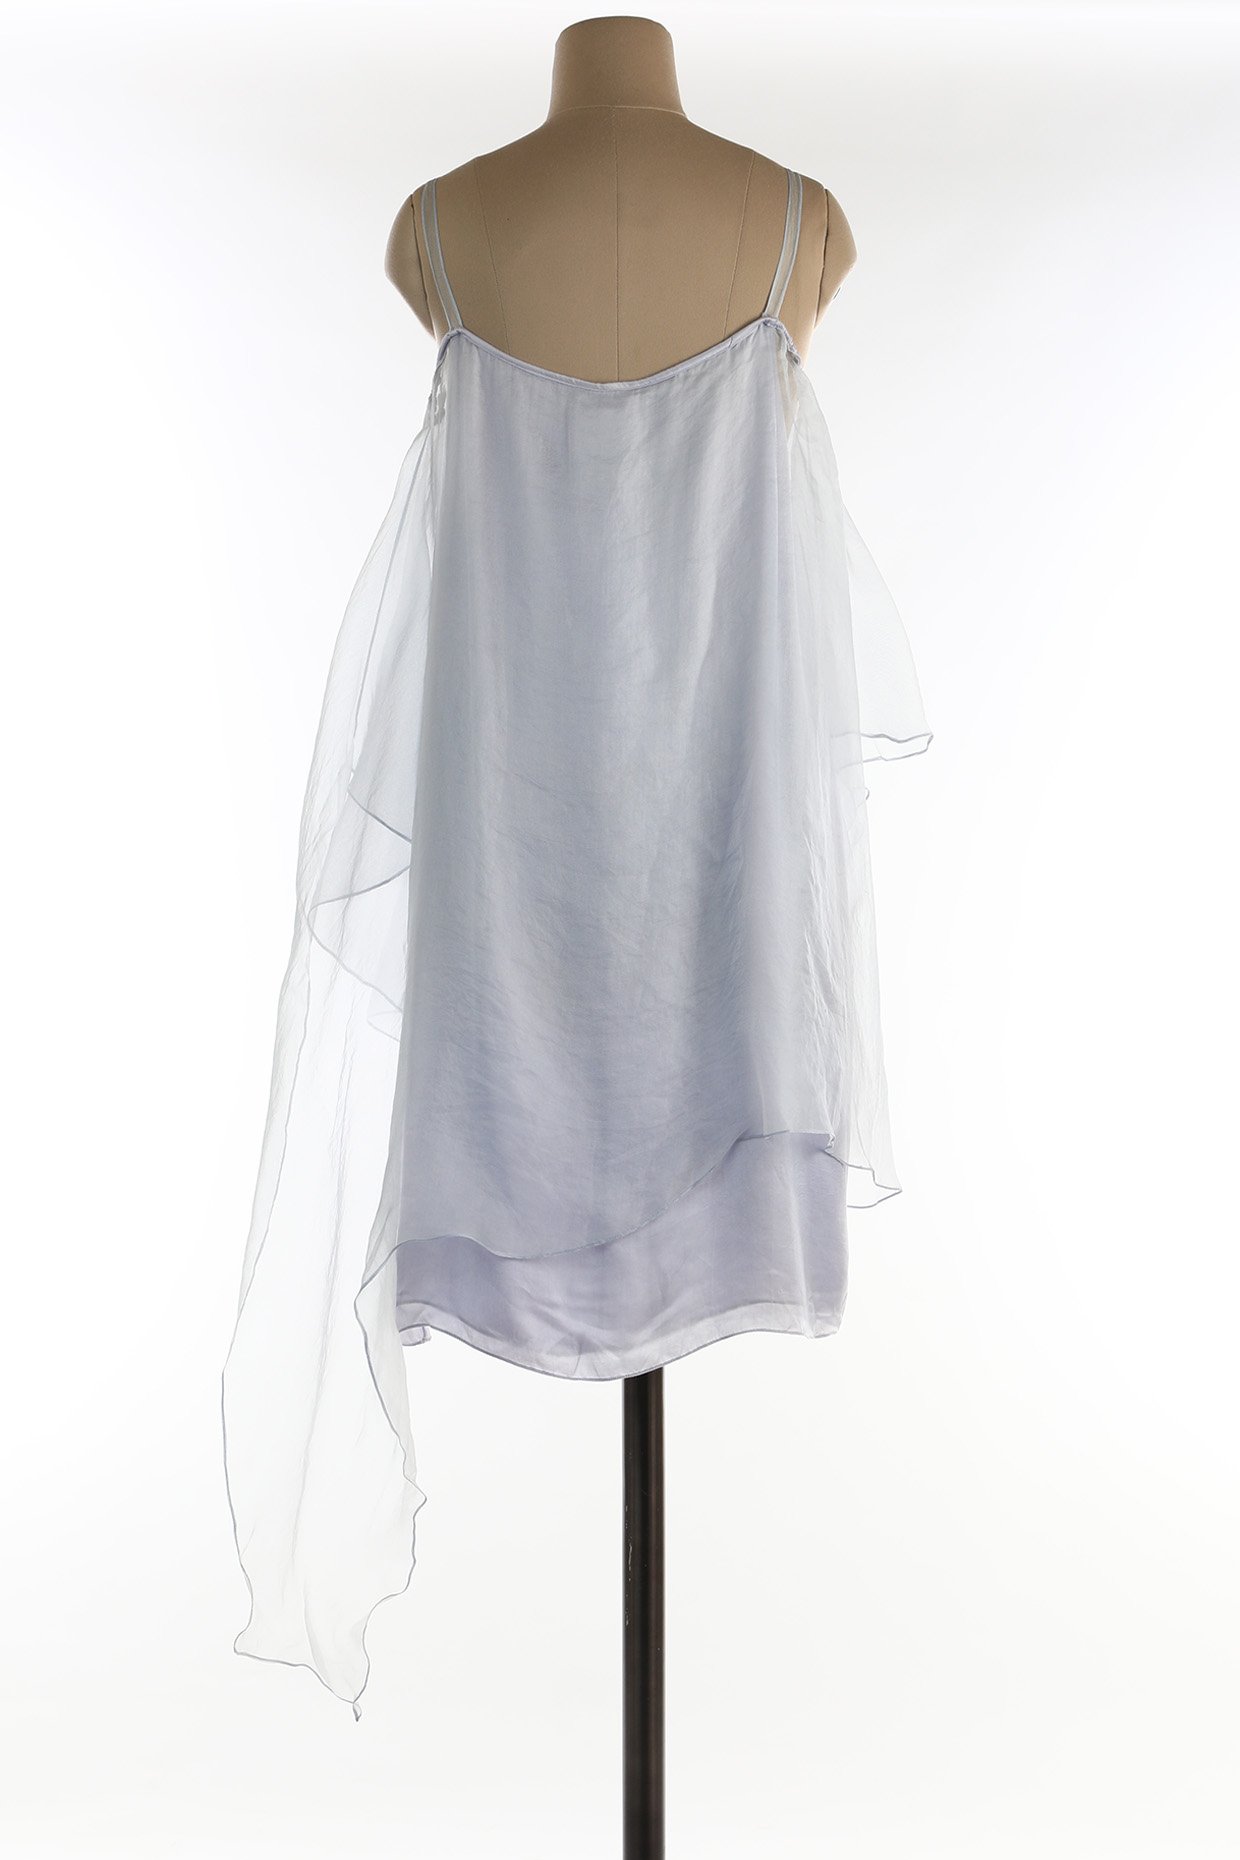 Shibori Printed White Pure Organza Anarkali Gown – Organza Mall